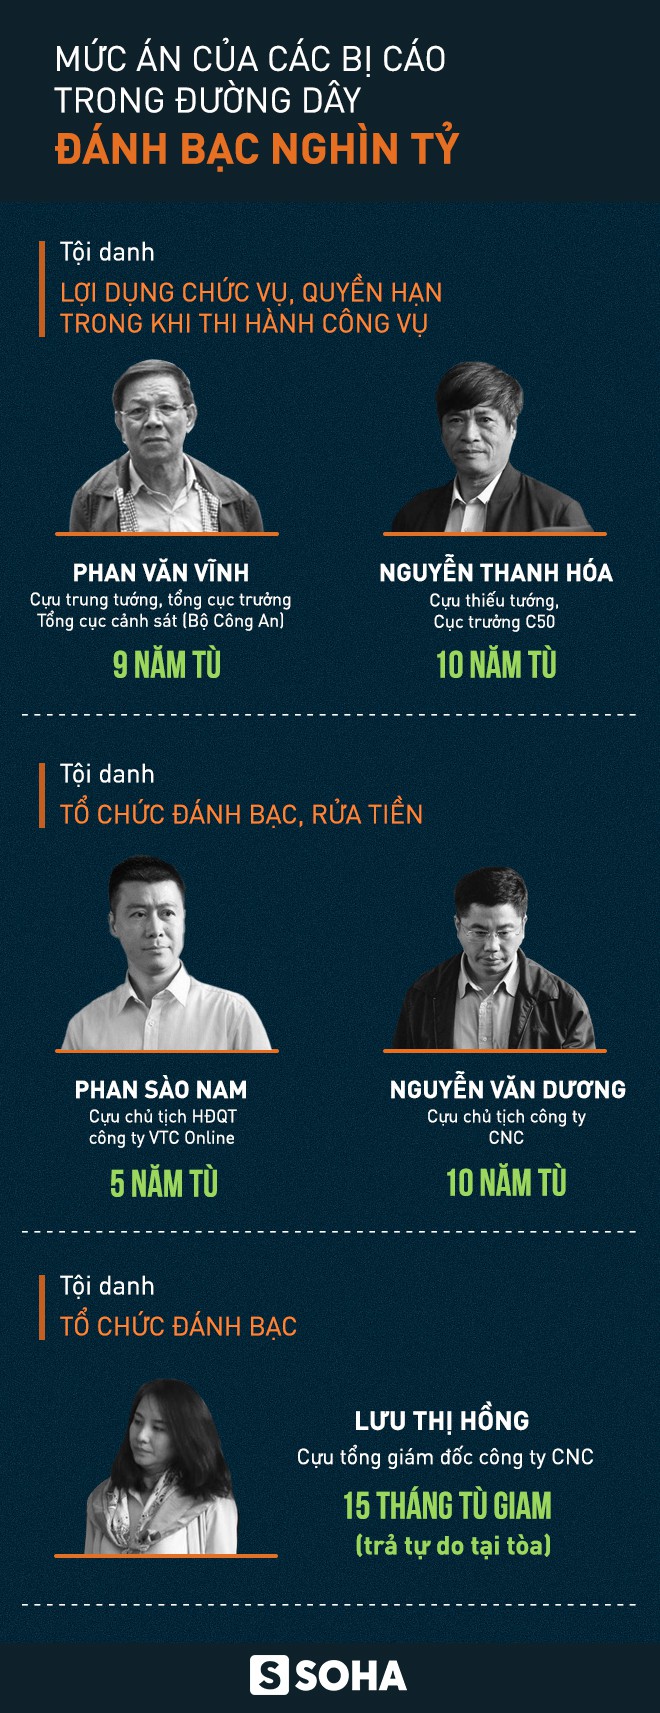 Mức án của Cựu tổng cục trưởng Cảnh sát Phan Văn Vĩnh cao hơn đề nghị - Ảnh 1.